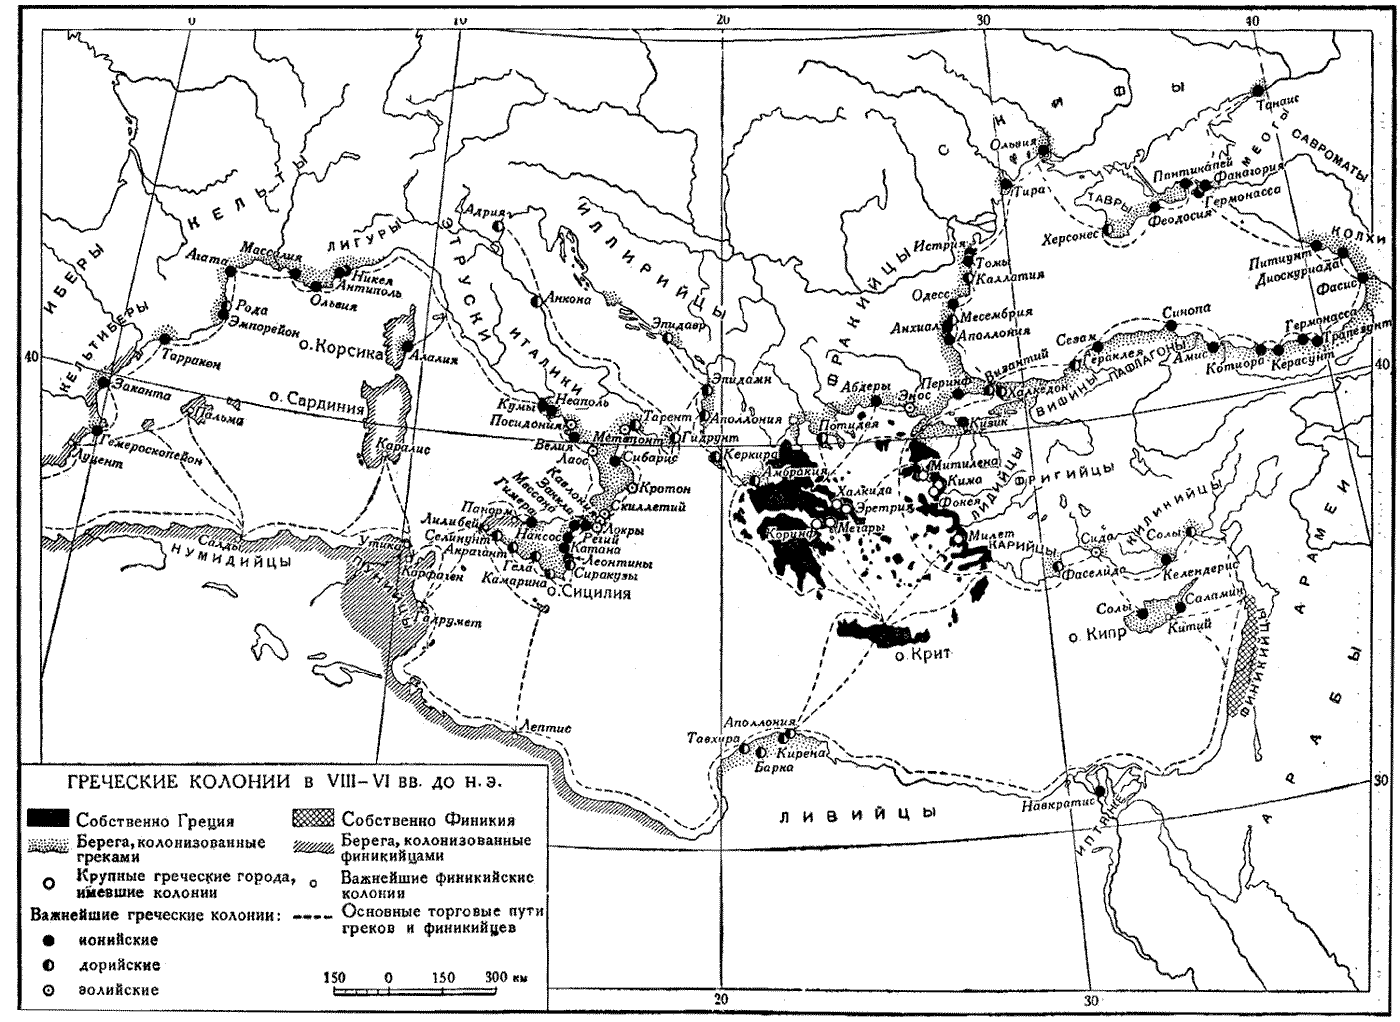 Карта. Греческие колонии в VIII-VI вв. до н.э.